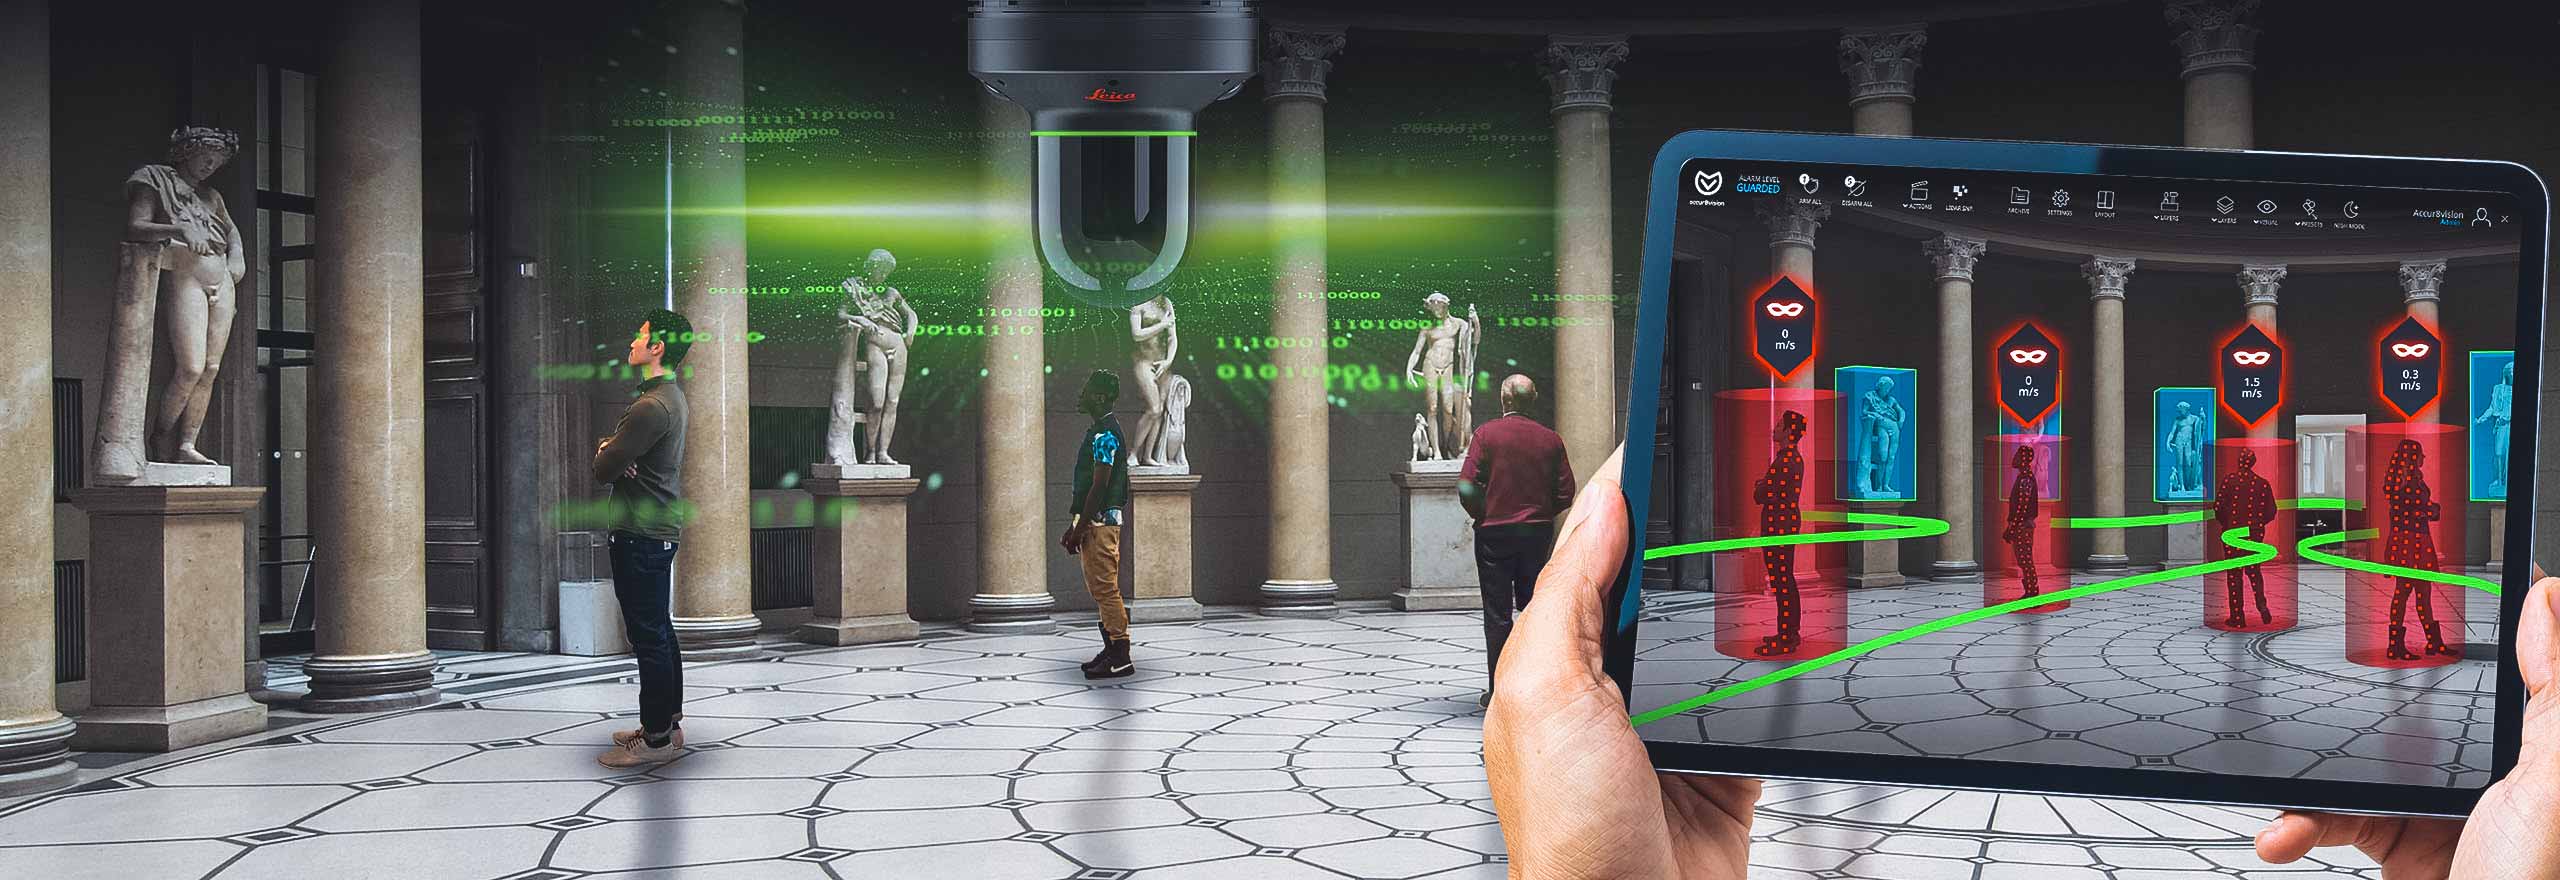 Museum nutzt die 3D-Sicherheitslösung Leica BLK247 mit Tablet, auf dem volumetrische Accur8vision-Überwachungssoftware zu sehen ist. 